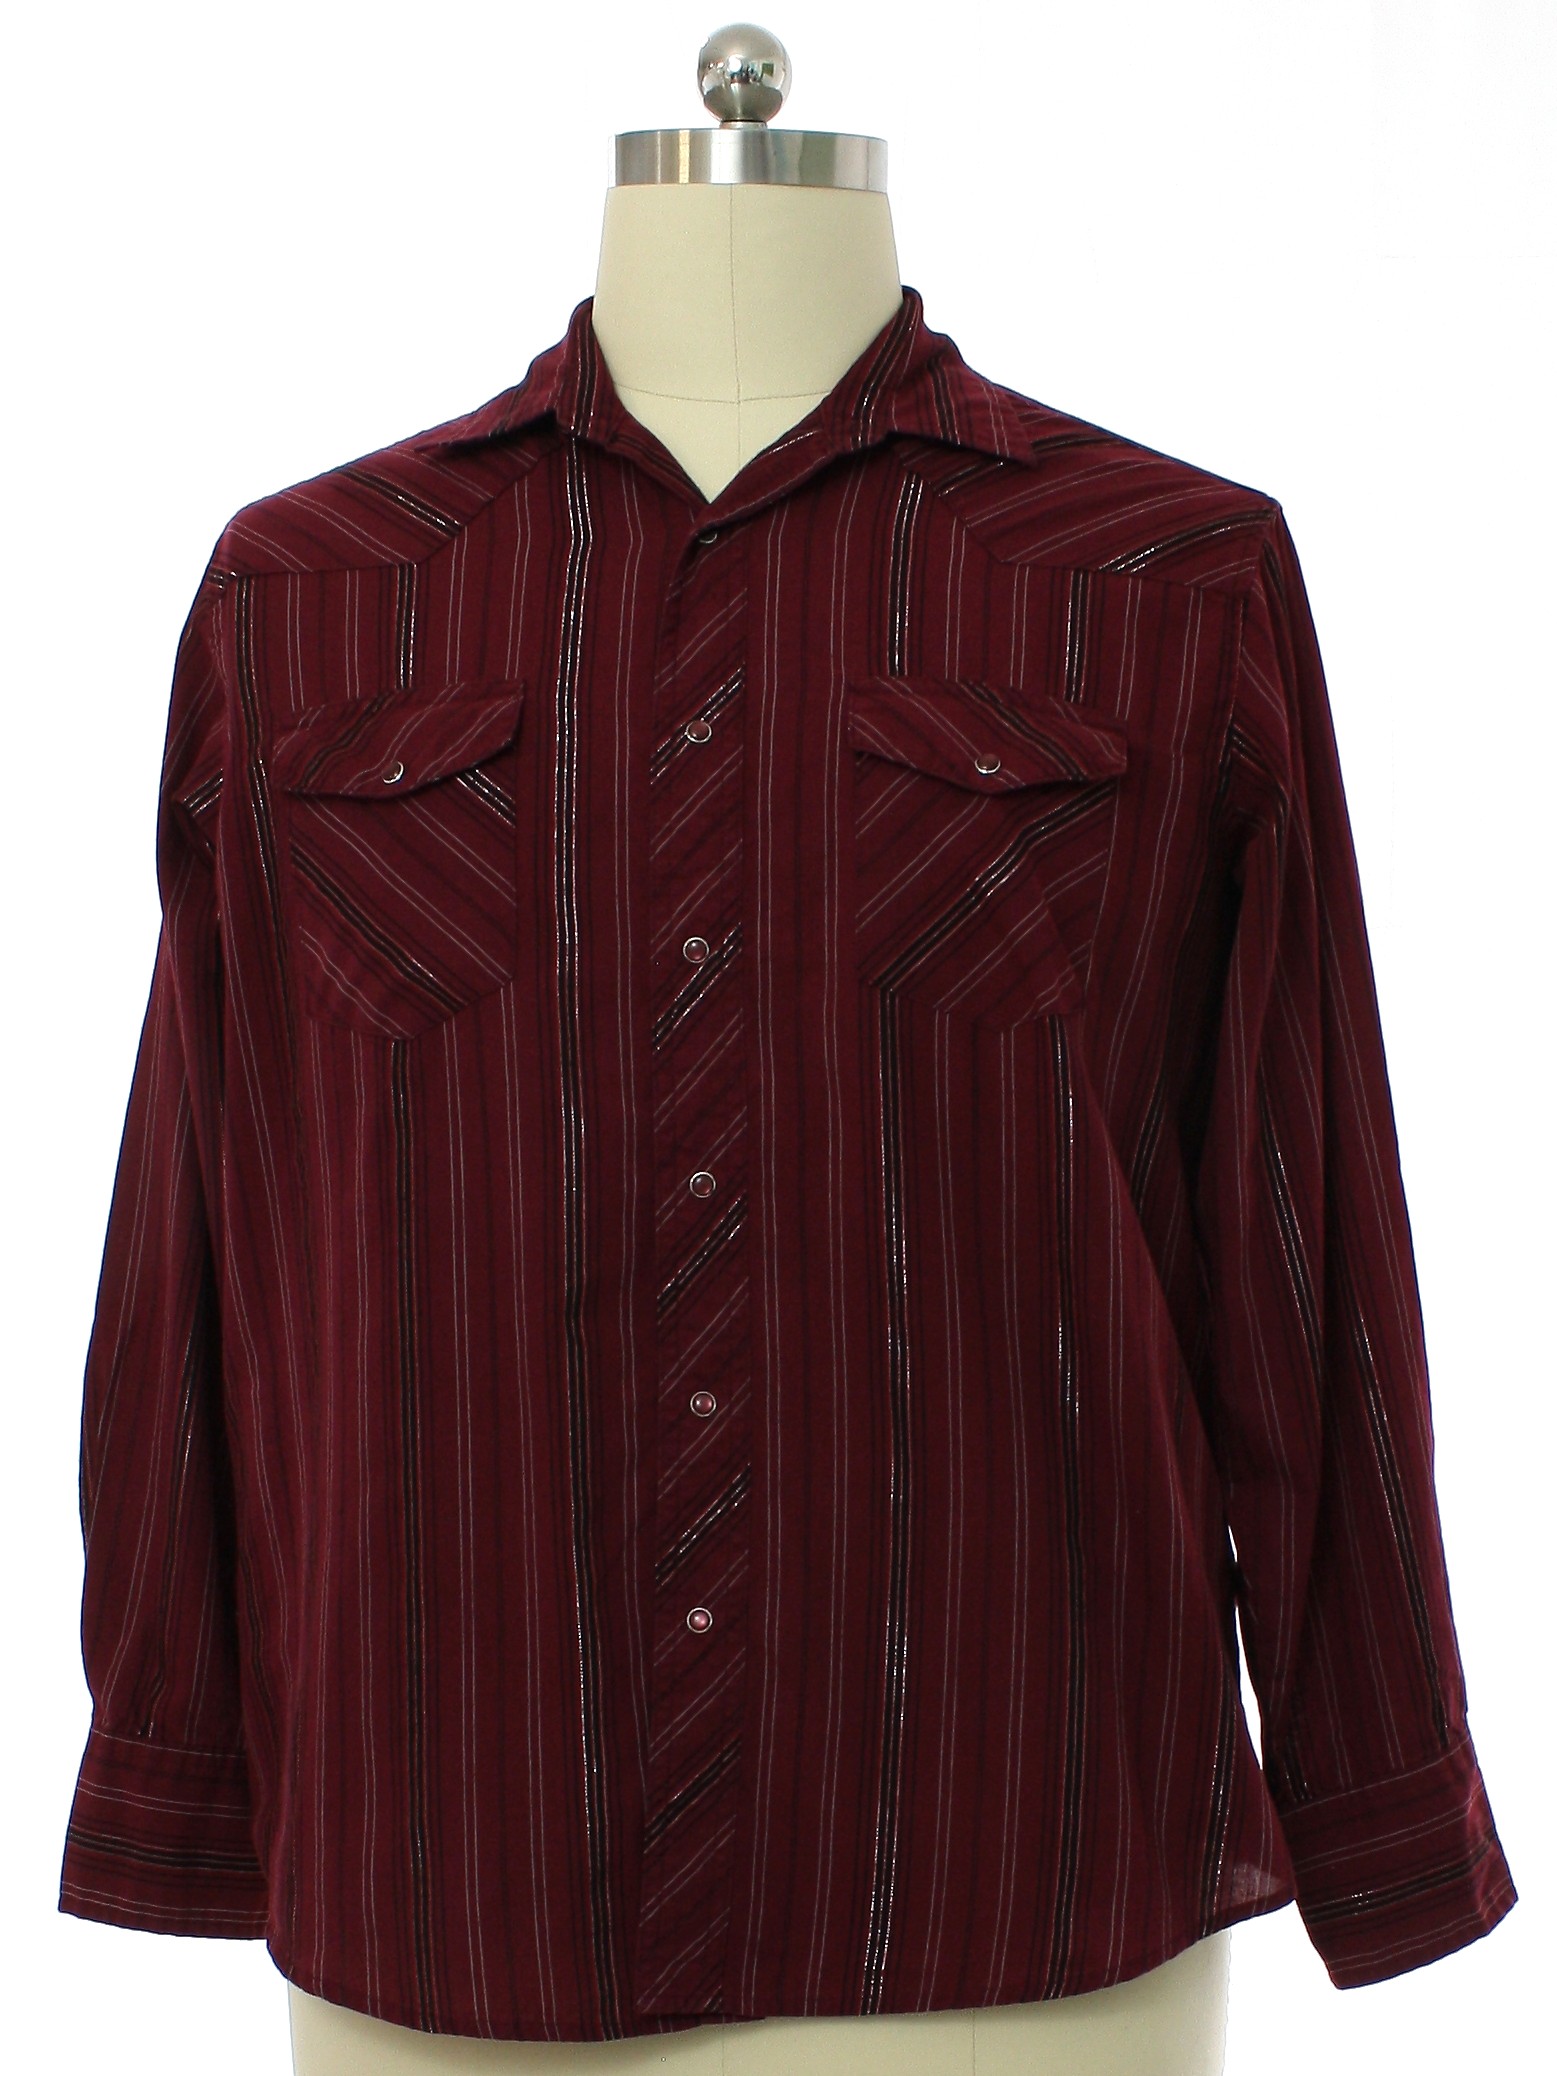 Western Shirt: 90s -Wrangler- Mens merlot red background polyester ...